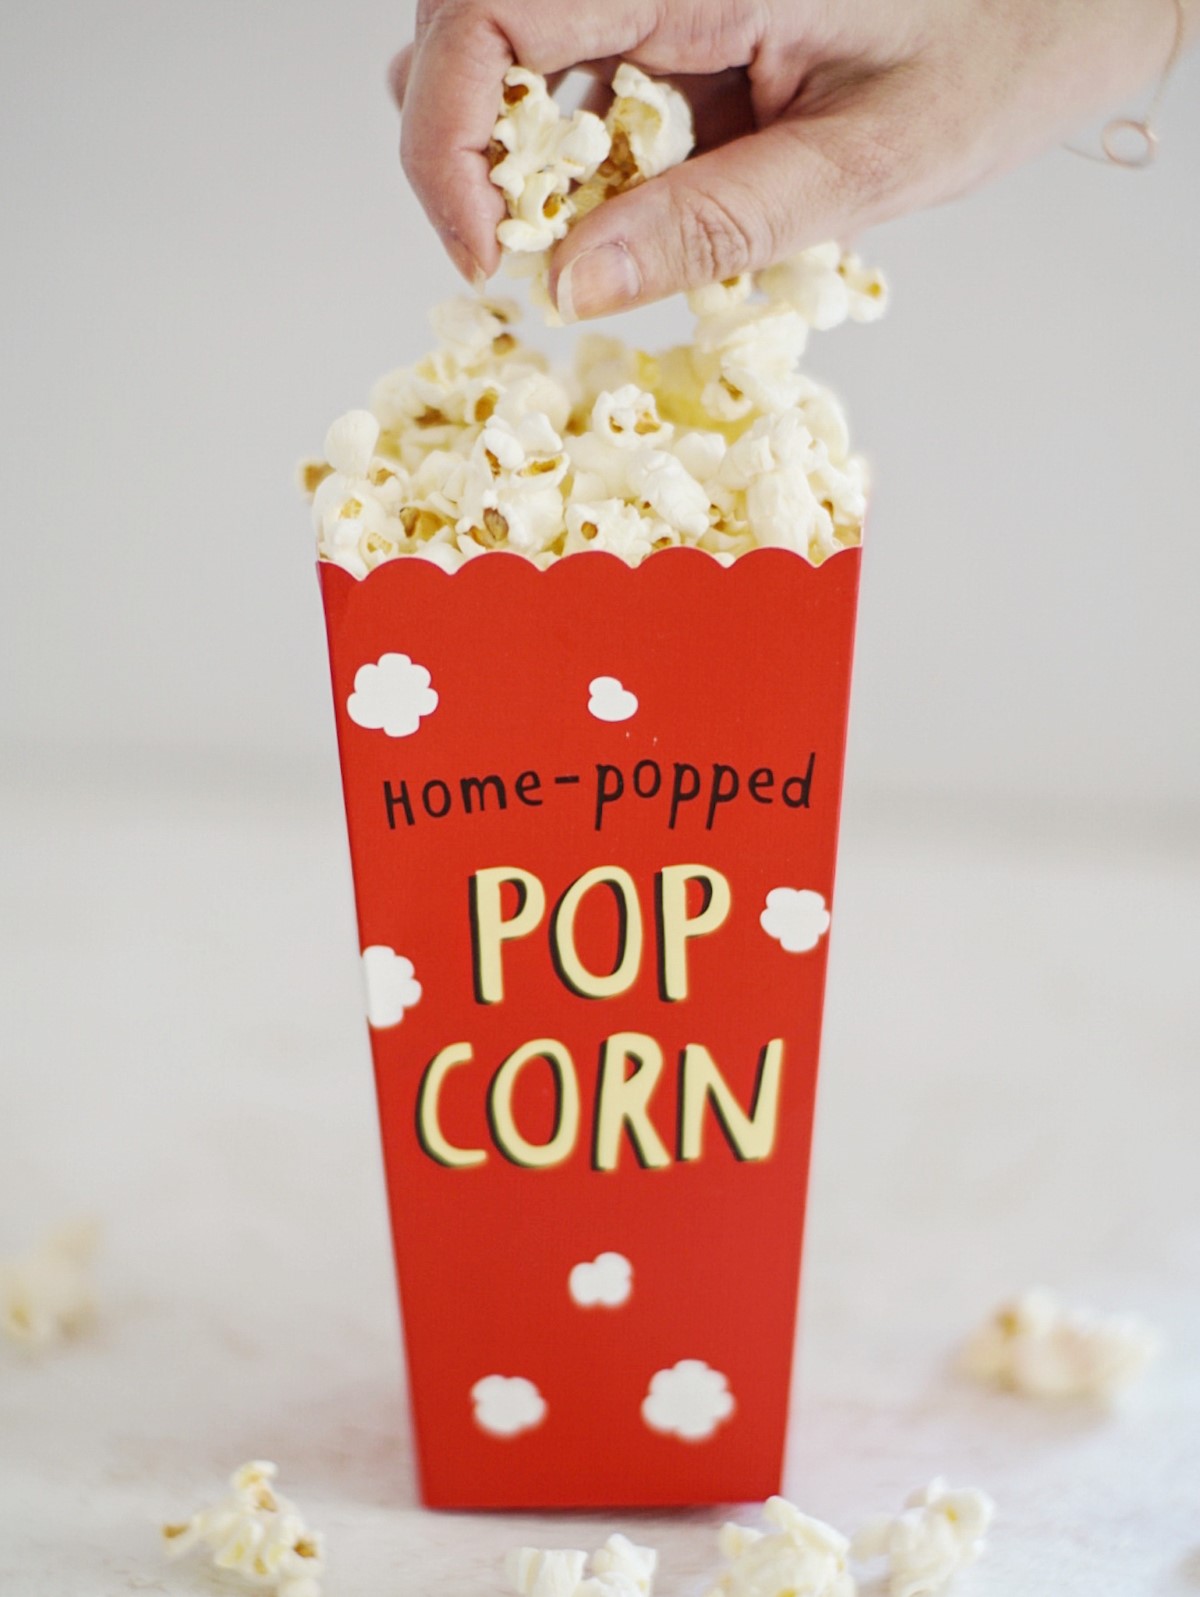 Hausgemachtes Popcorn - alt